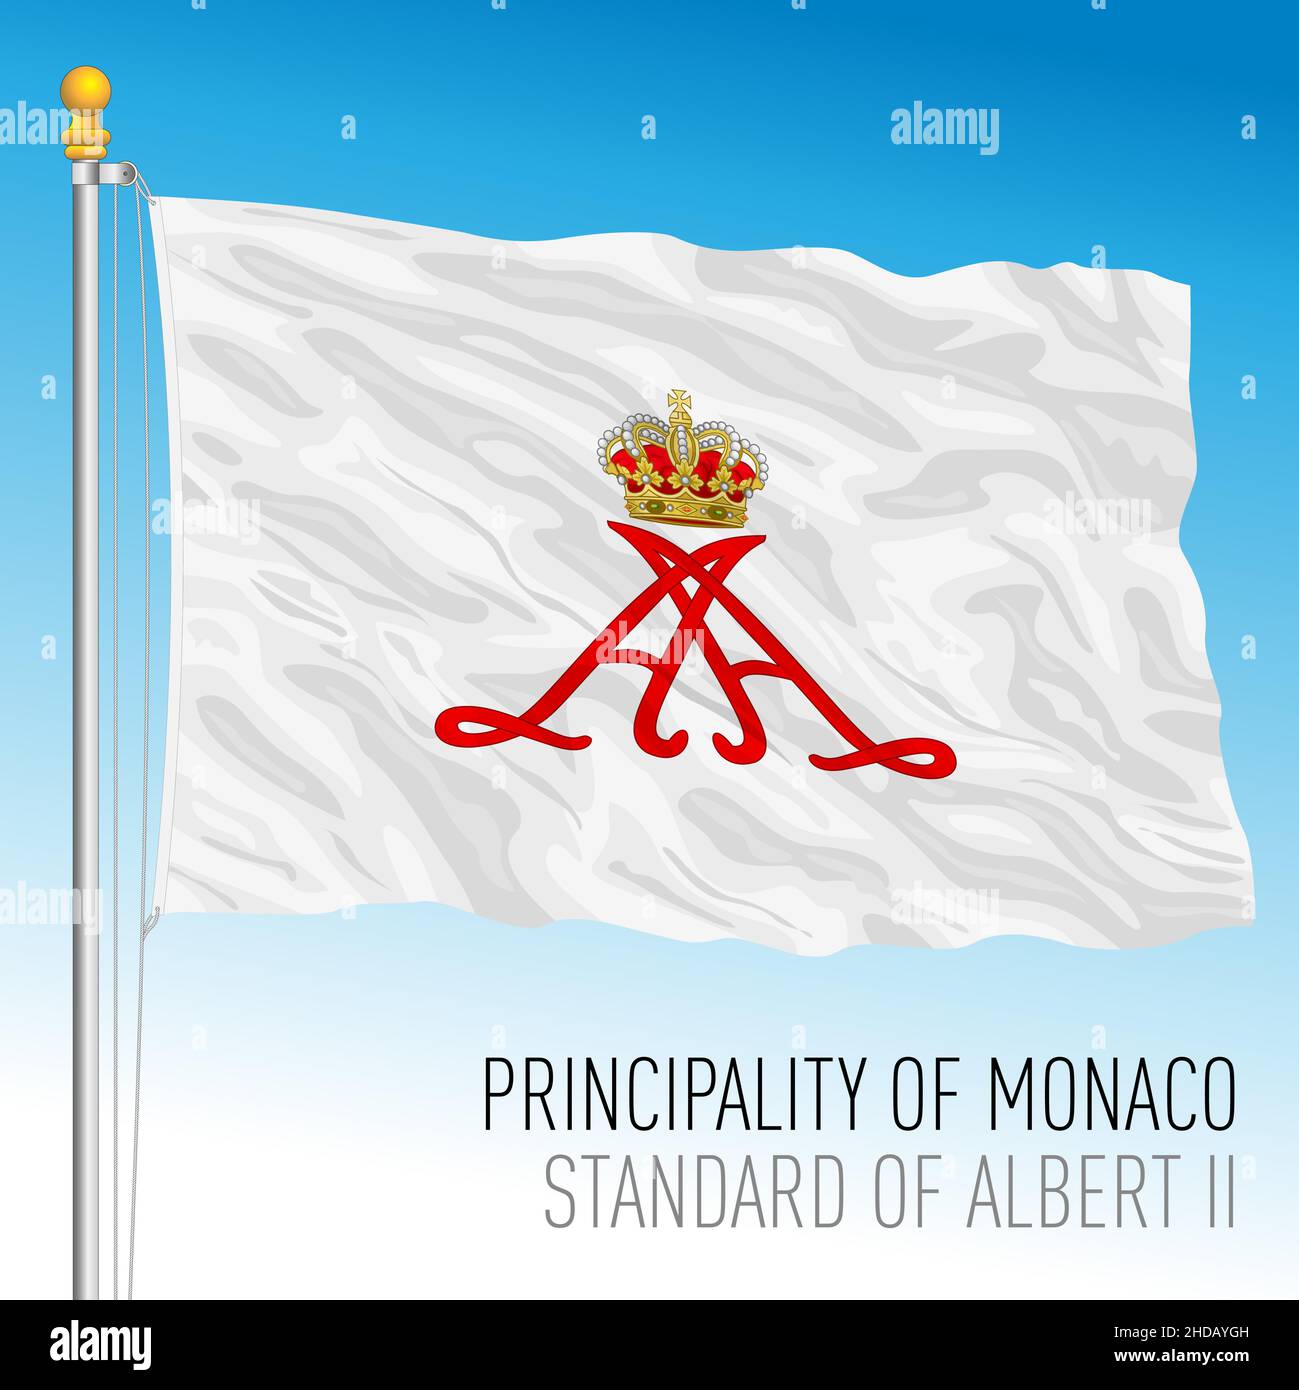 Fürstentum Monaco, Standard der Albert II Flagge, europäisches Land, Vektorgrafik Stock Vektor